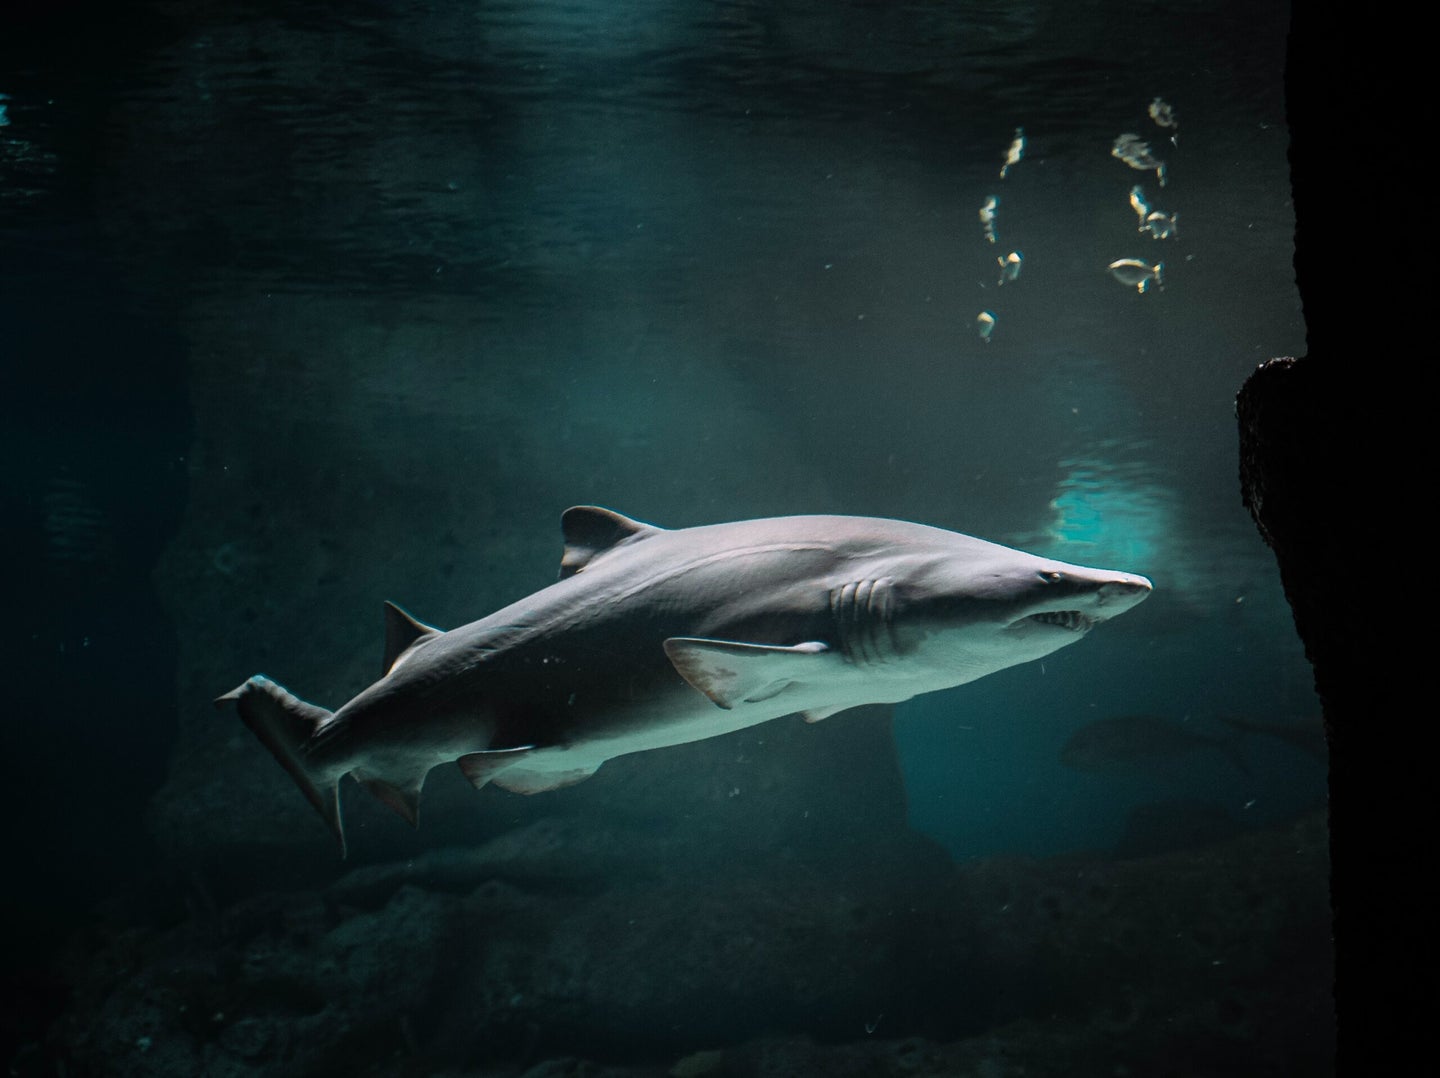 Medium-sized shark swimming through dark waters